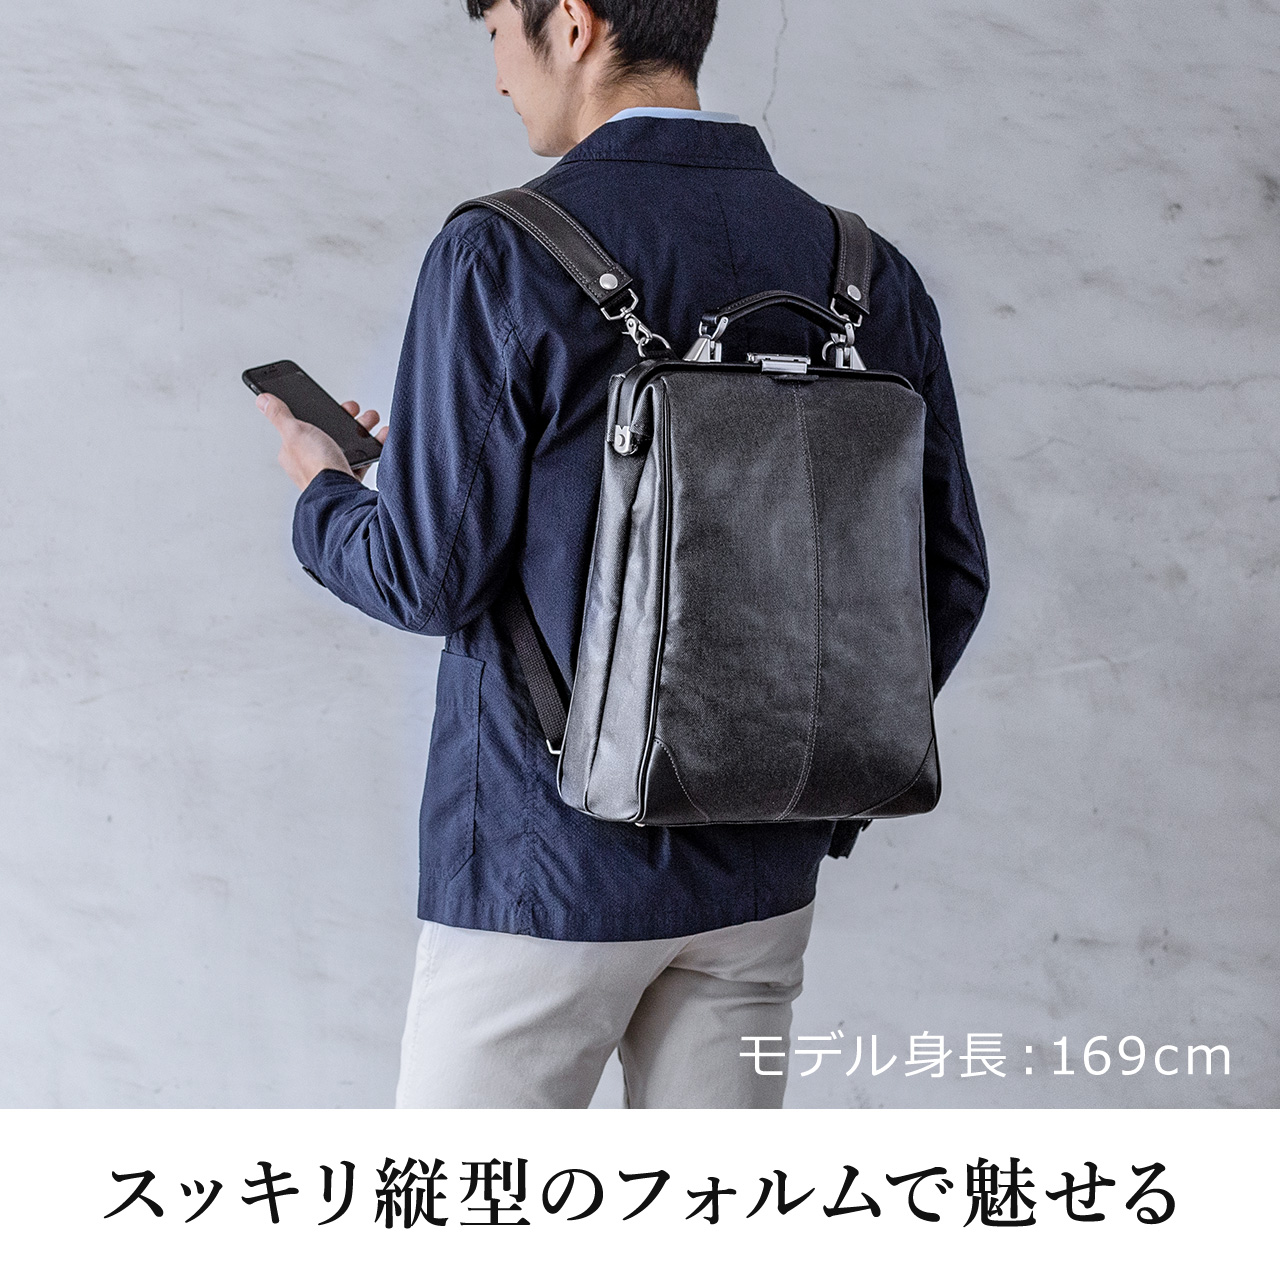 ダレスバッグ メンズ ビジネスバッグ ビジネスリュック 豊岡鞄 日本製